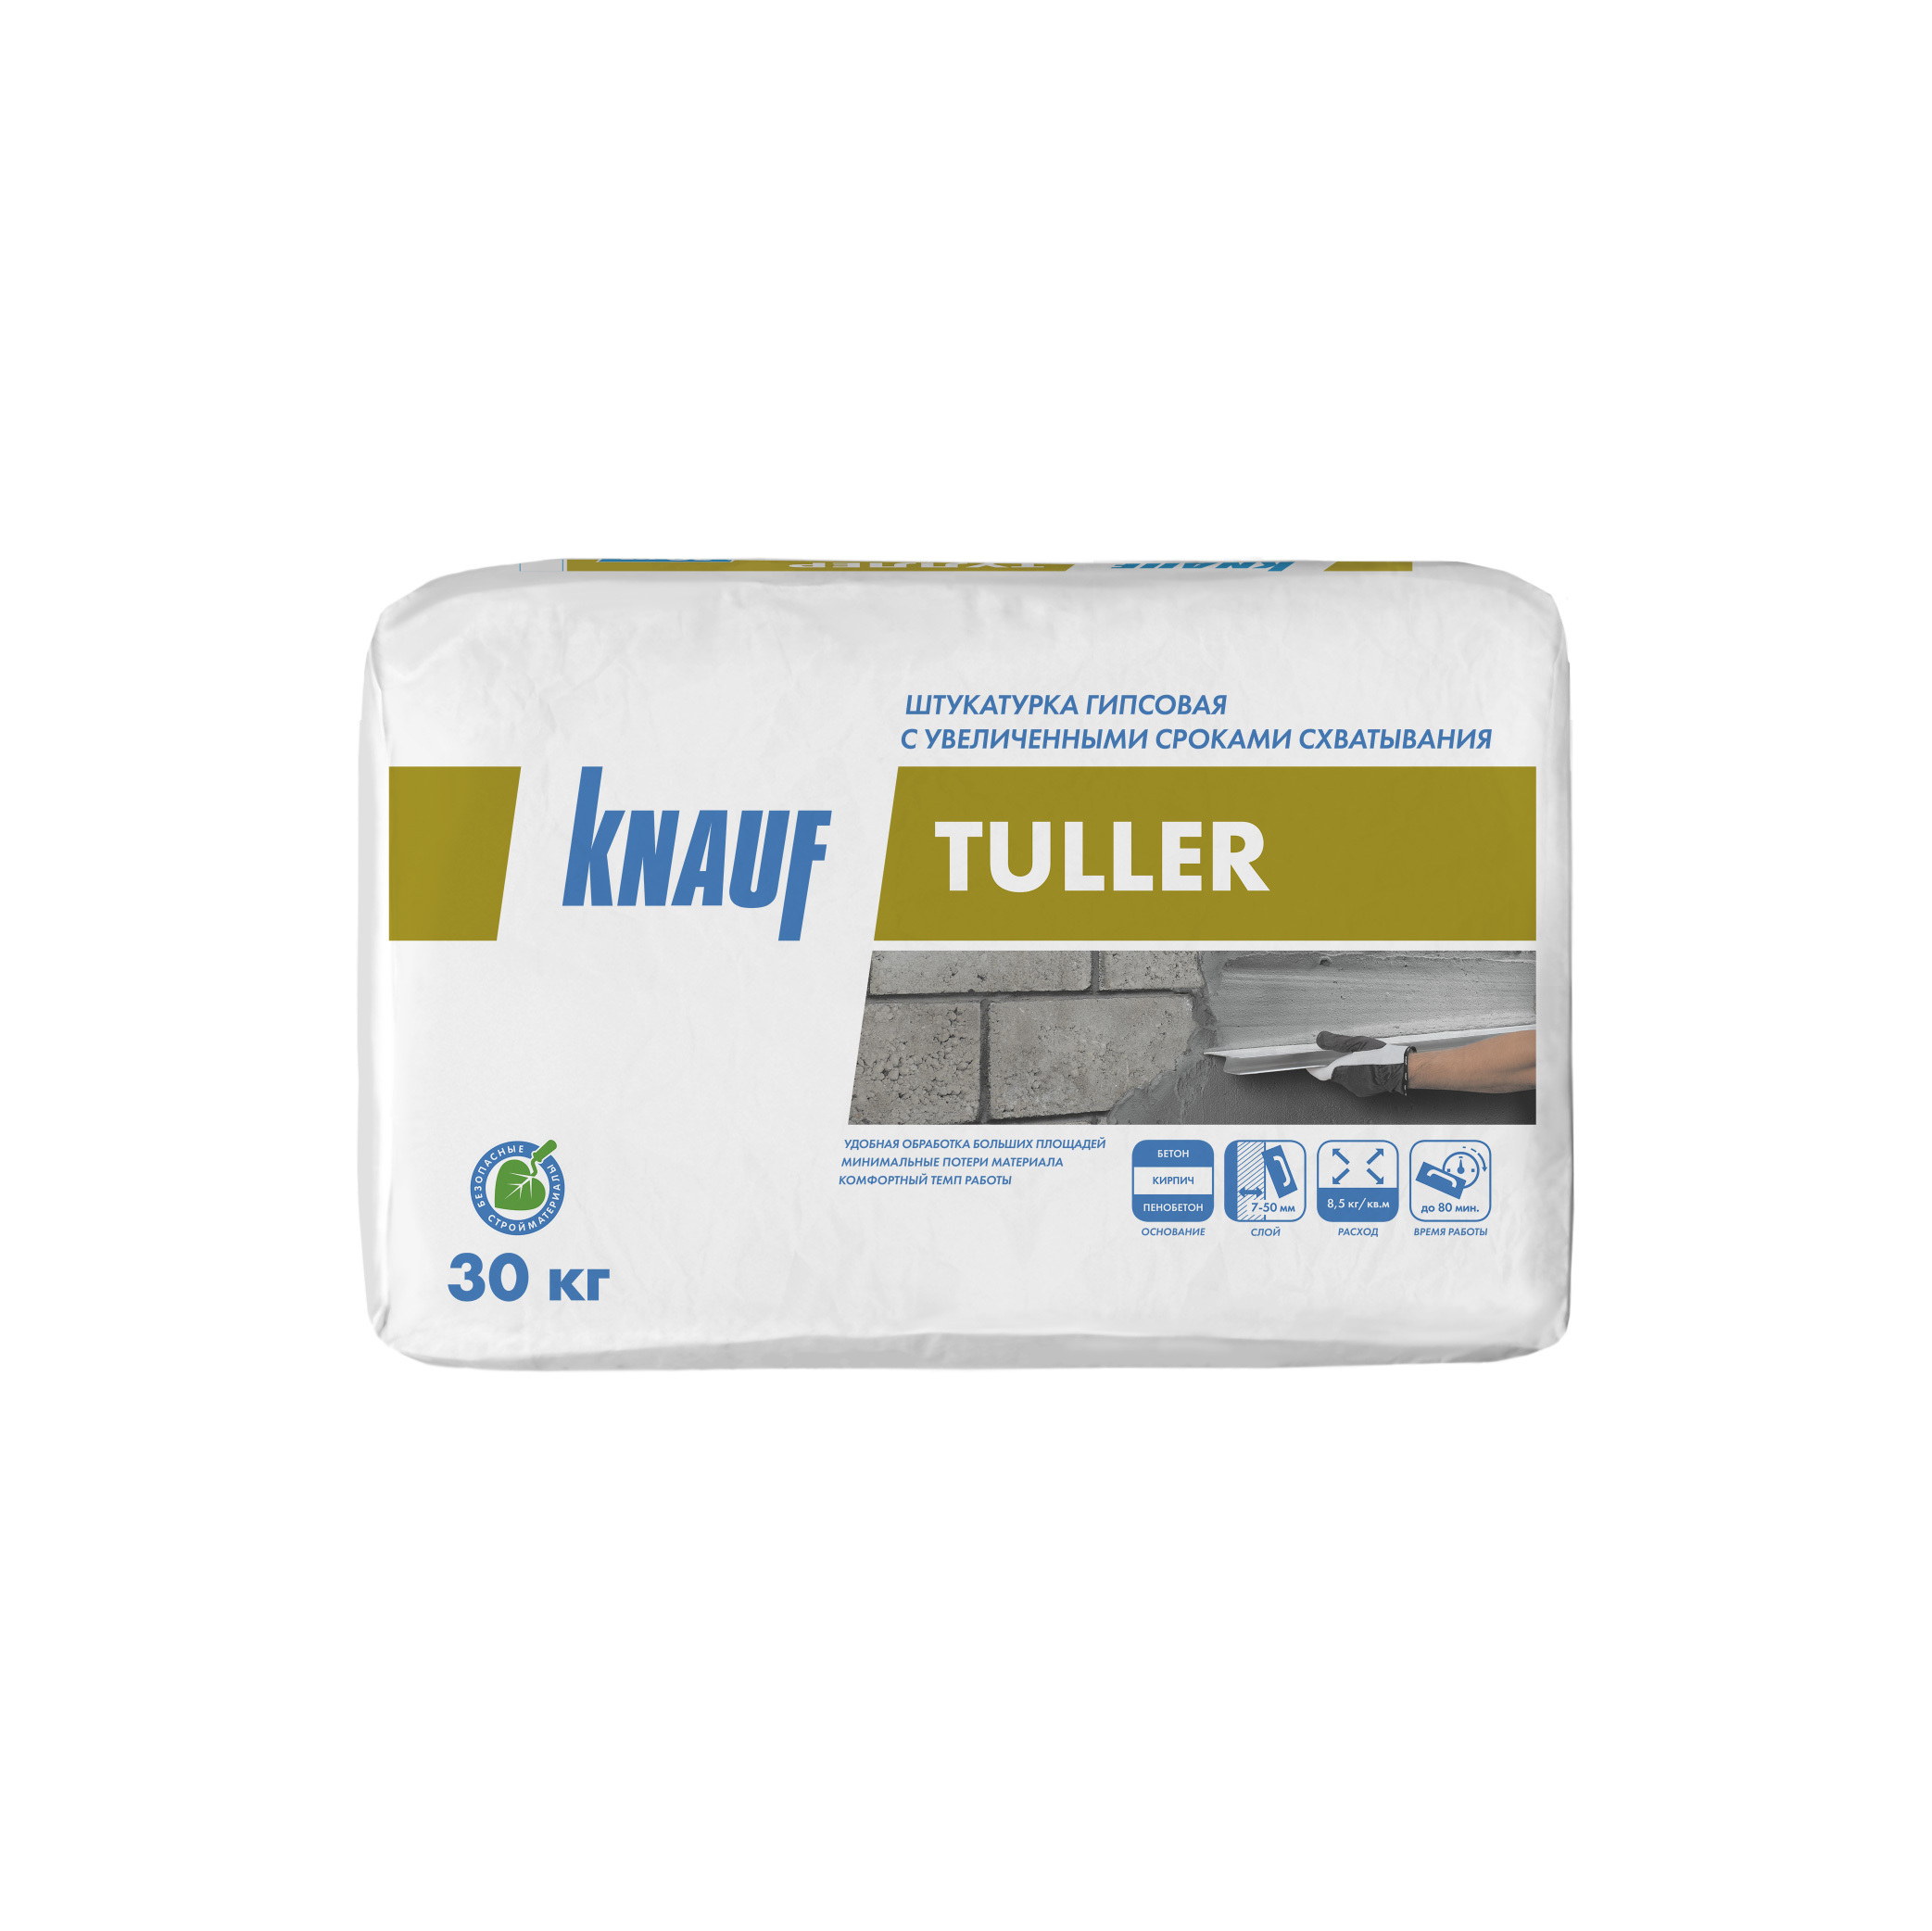 Штукатурка гипсовая Knauf Туллер эластичная 30 кг штукатурка гипсовая knauf туллер эластичная 30 кг